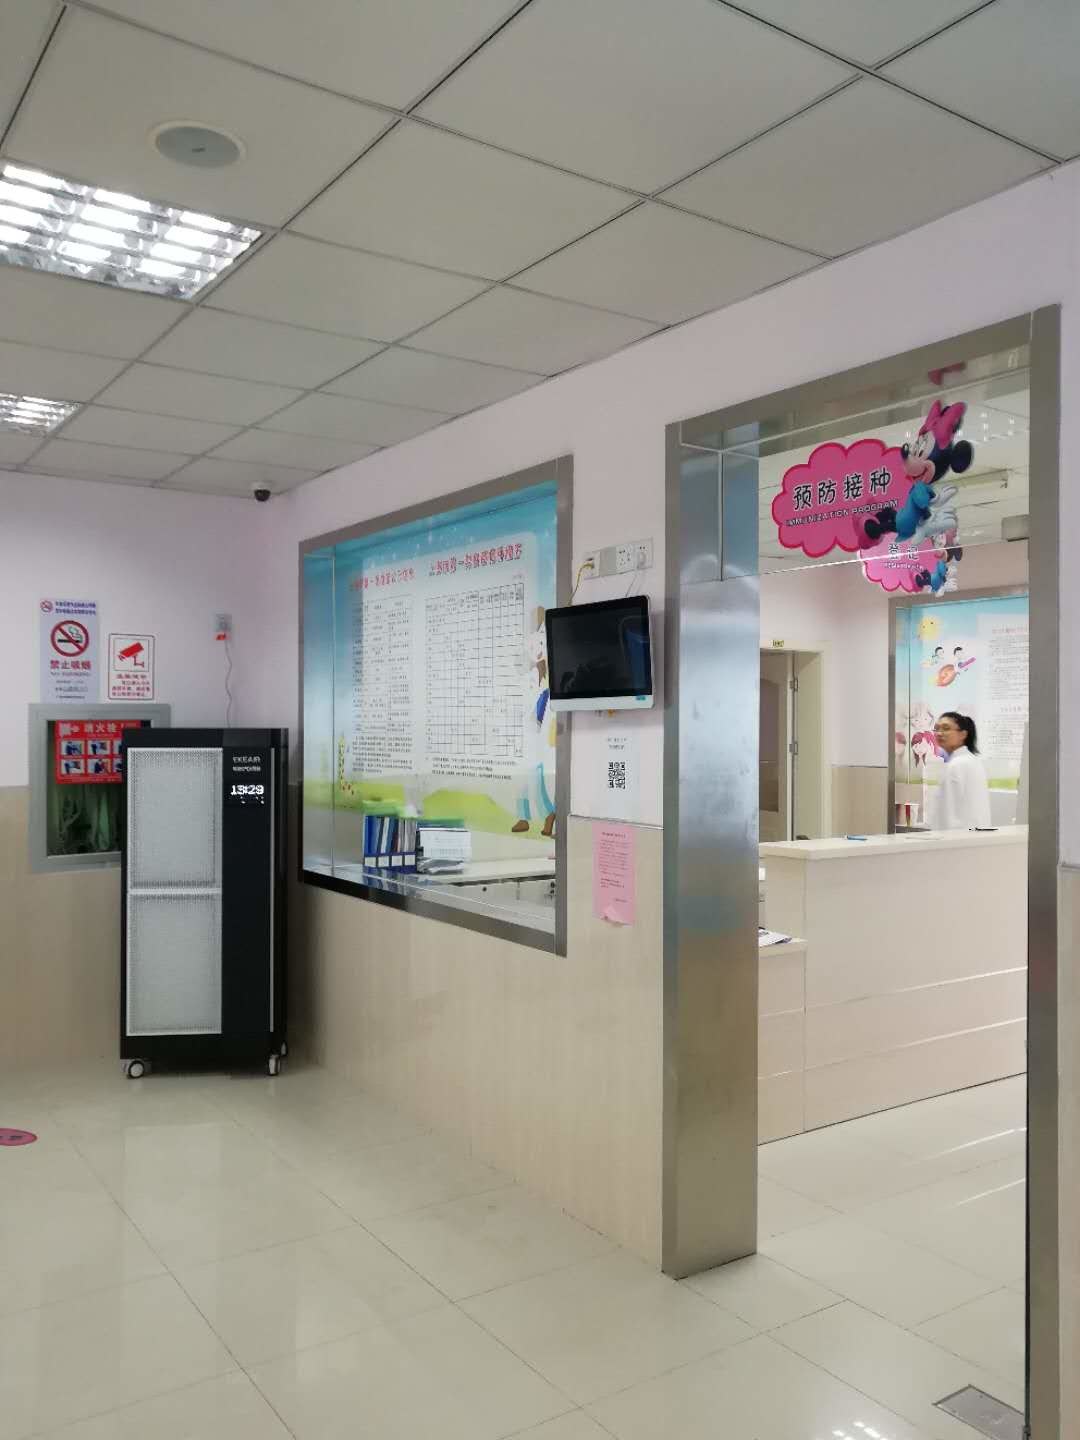 के बारे में नवीनतम कंपनी का मामला शंघाई लुओजिंग टाउन सामुदायिक स्वास्थ्य केंद्र